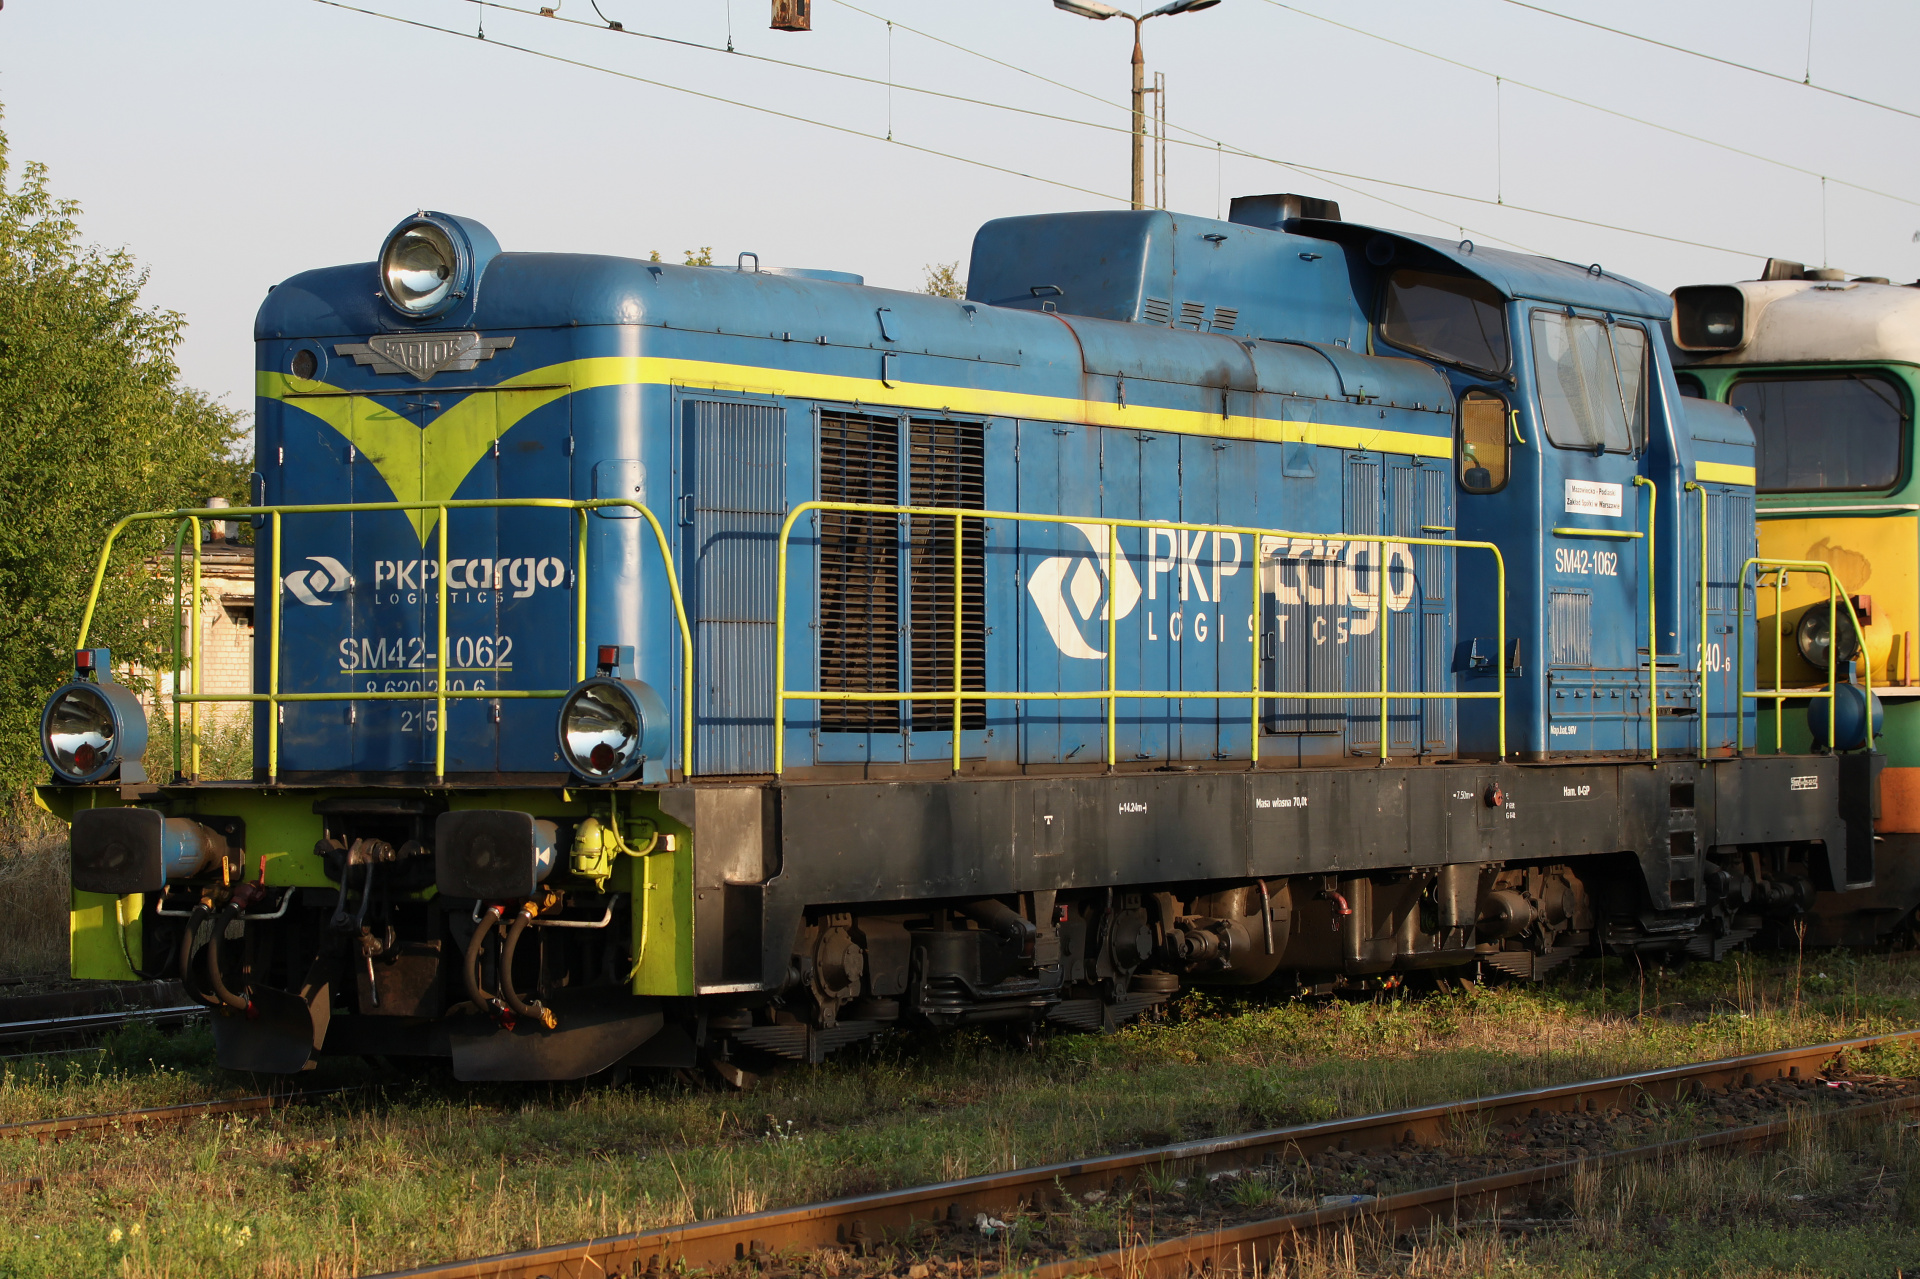 SM42-1062 (Vehicles » Trains and Locomotives » Fablok 6D)